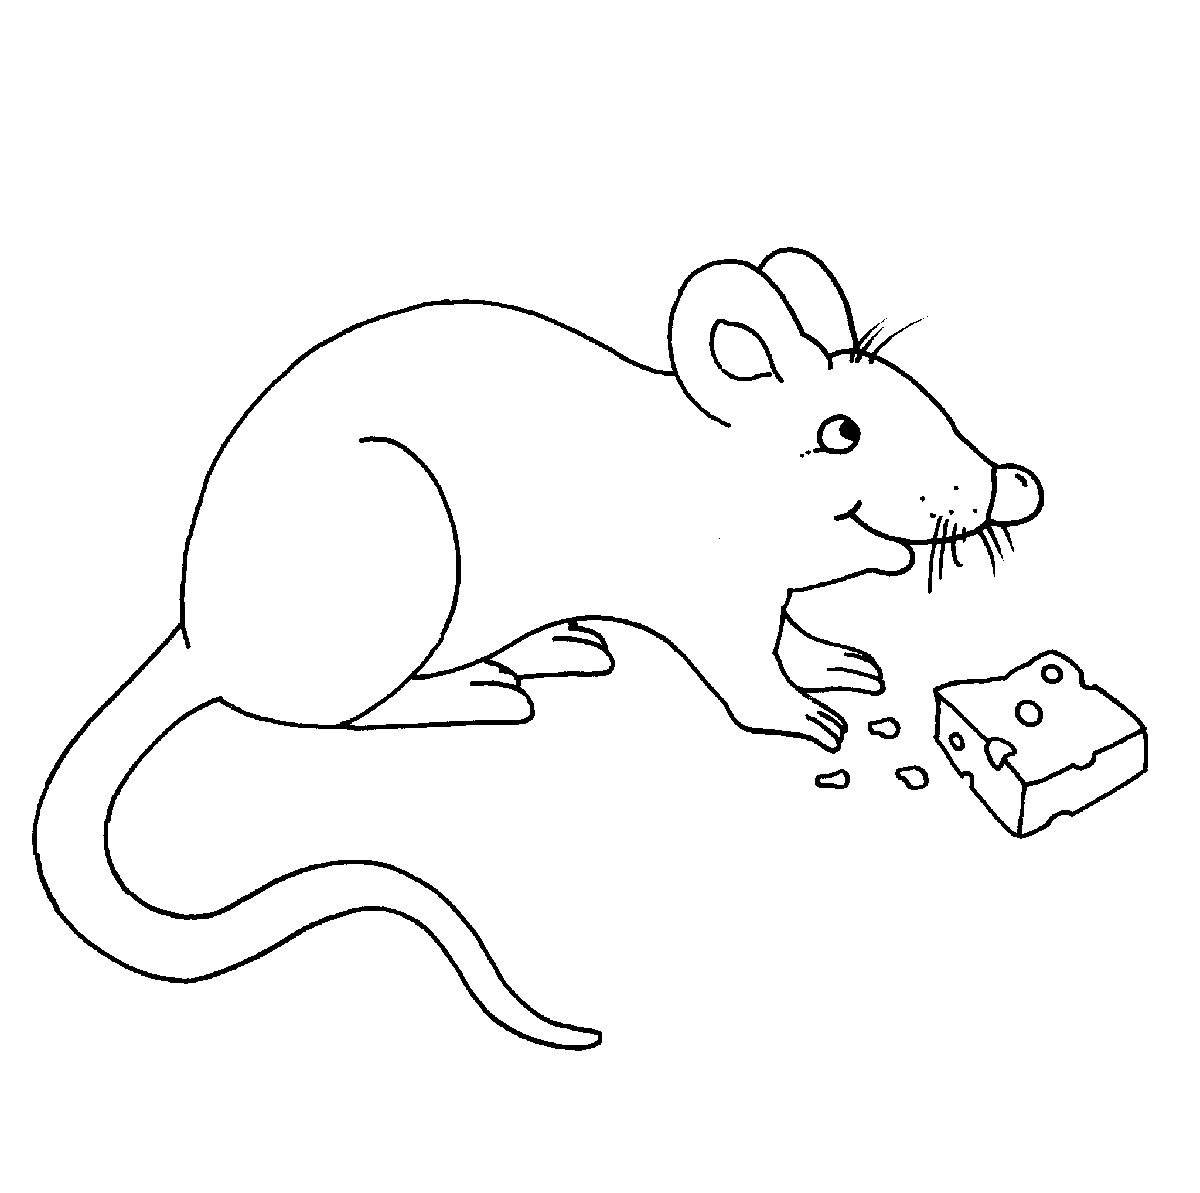 Раскраска мышь распечатать. Мышь раскраска. Раскраска мышонок. Мышь раскраска для детей. Мышка для раскрашивания детям.